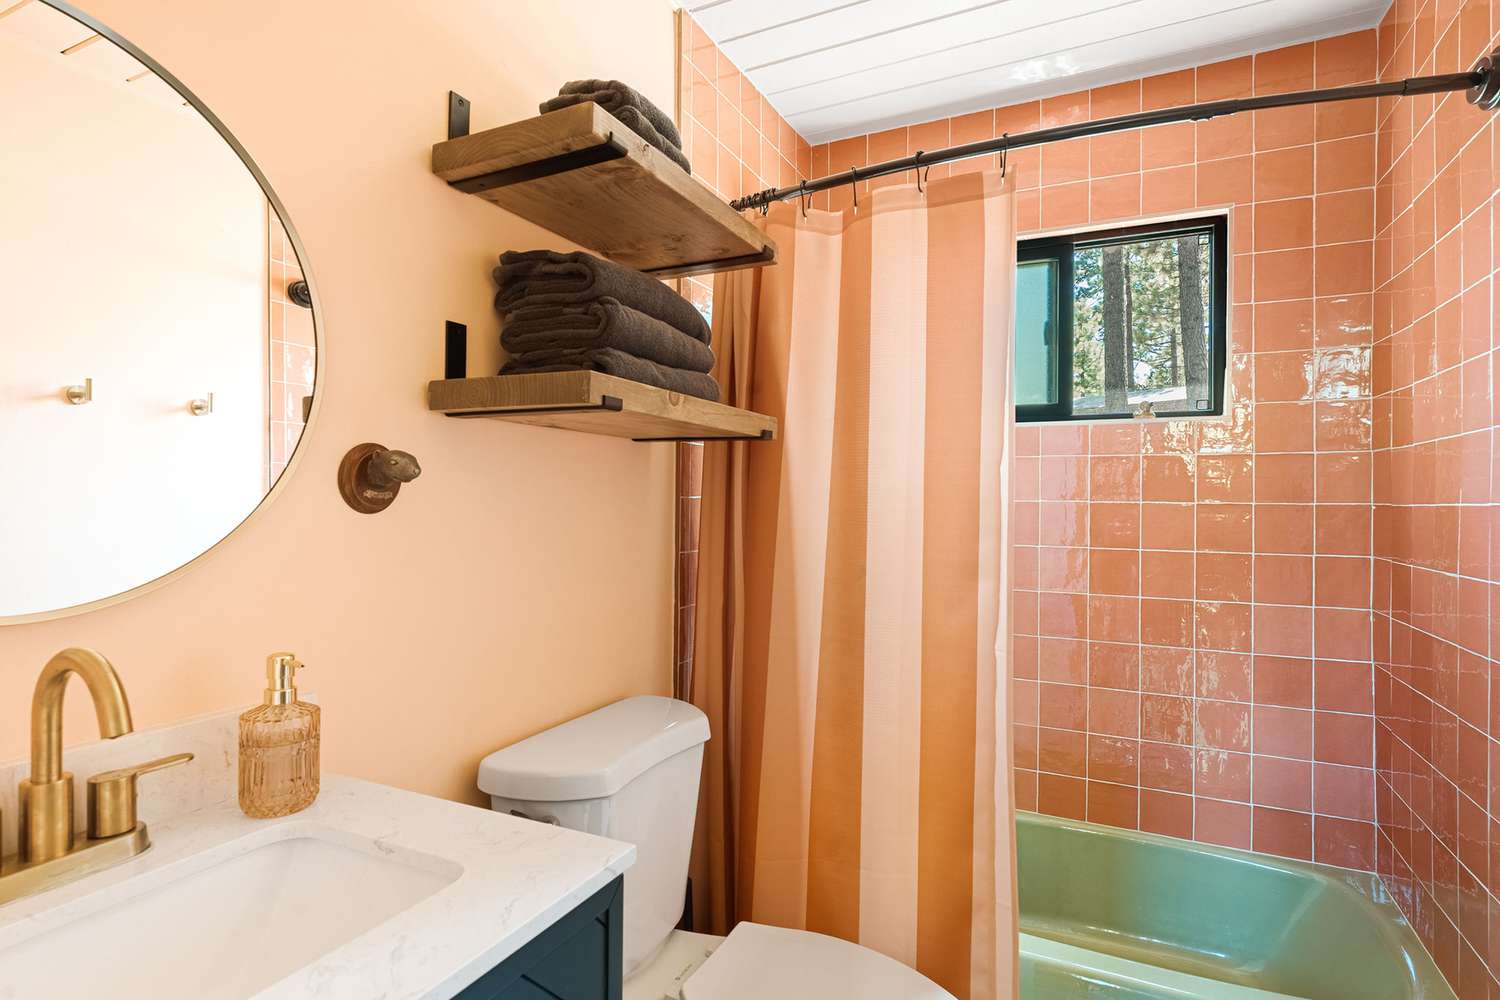 Salle de bain rose et verte d'inspiration vintage